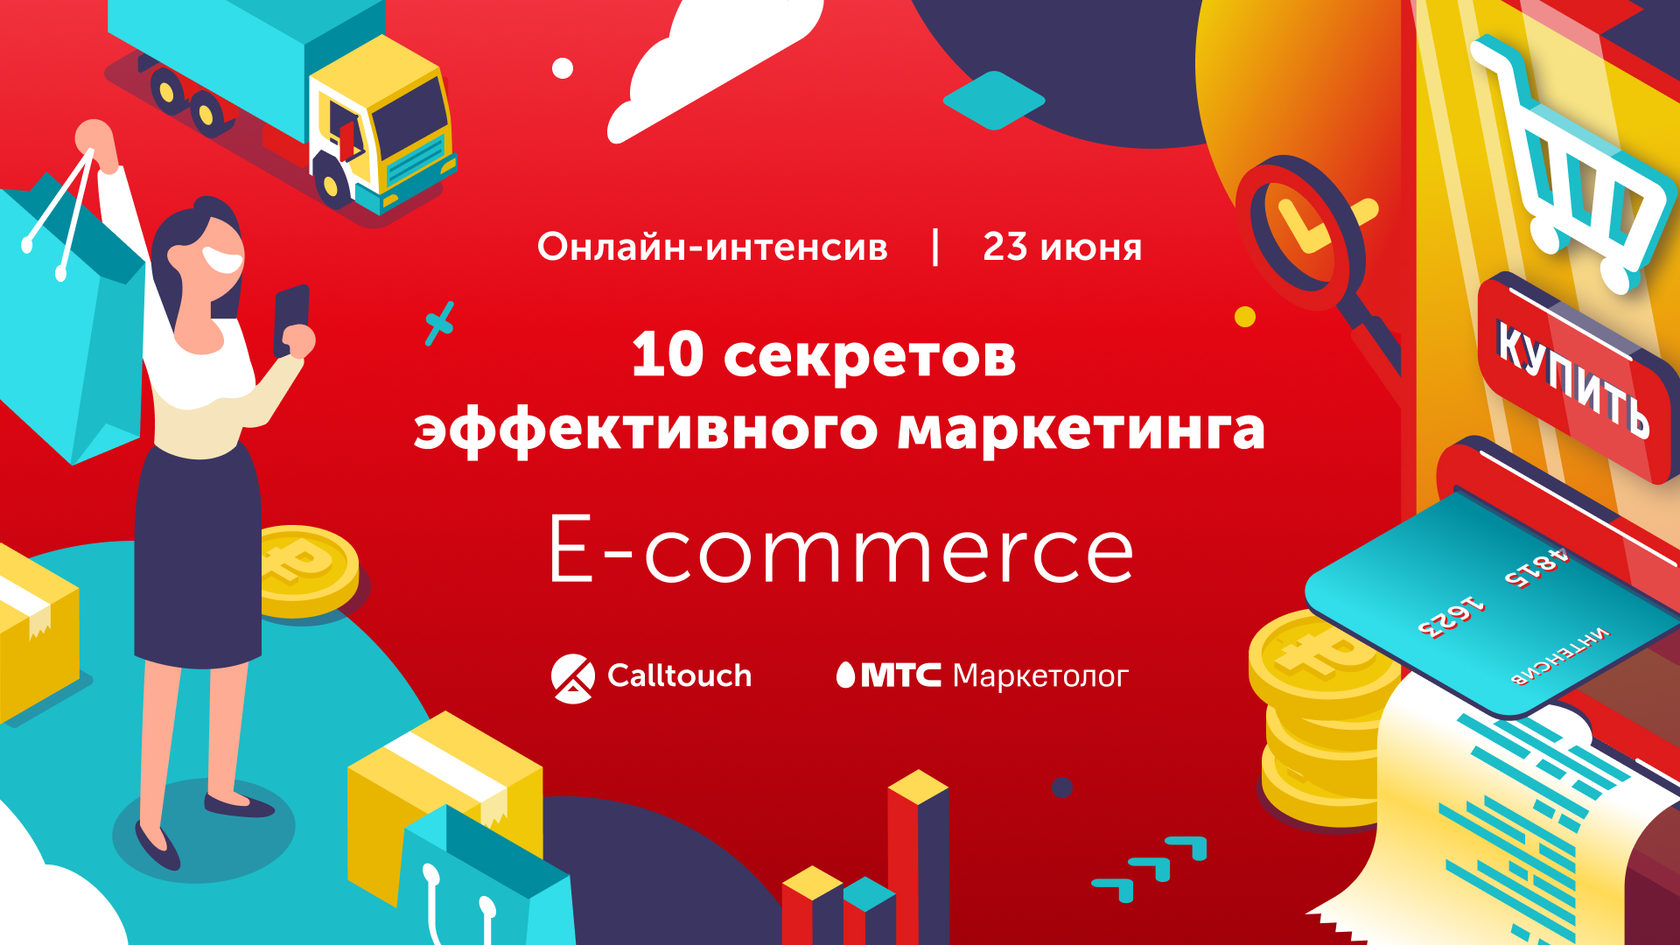 Онлайн-интенсив «10 секретов эффективного маркетинга E-commerce»